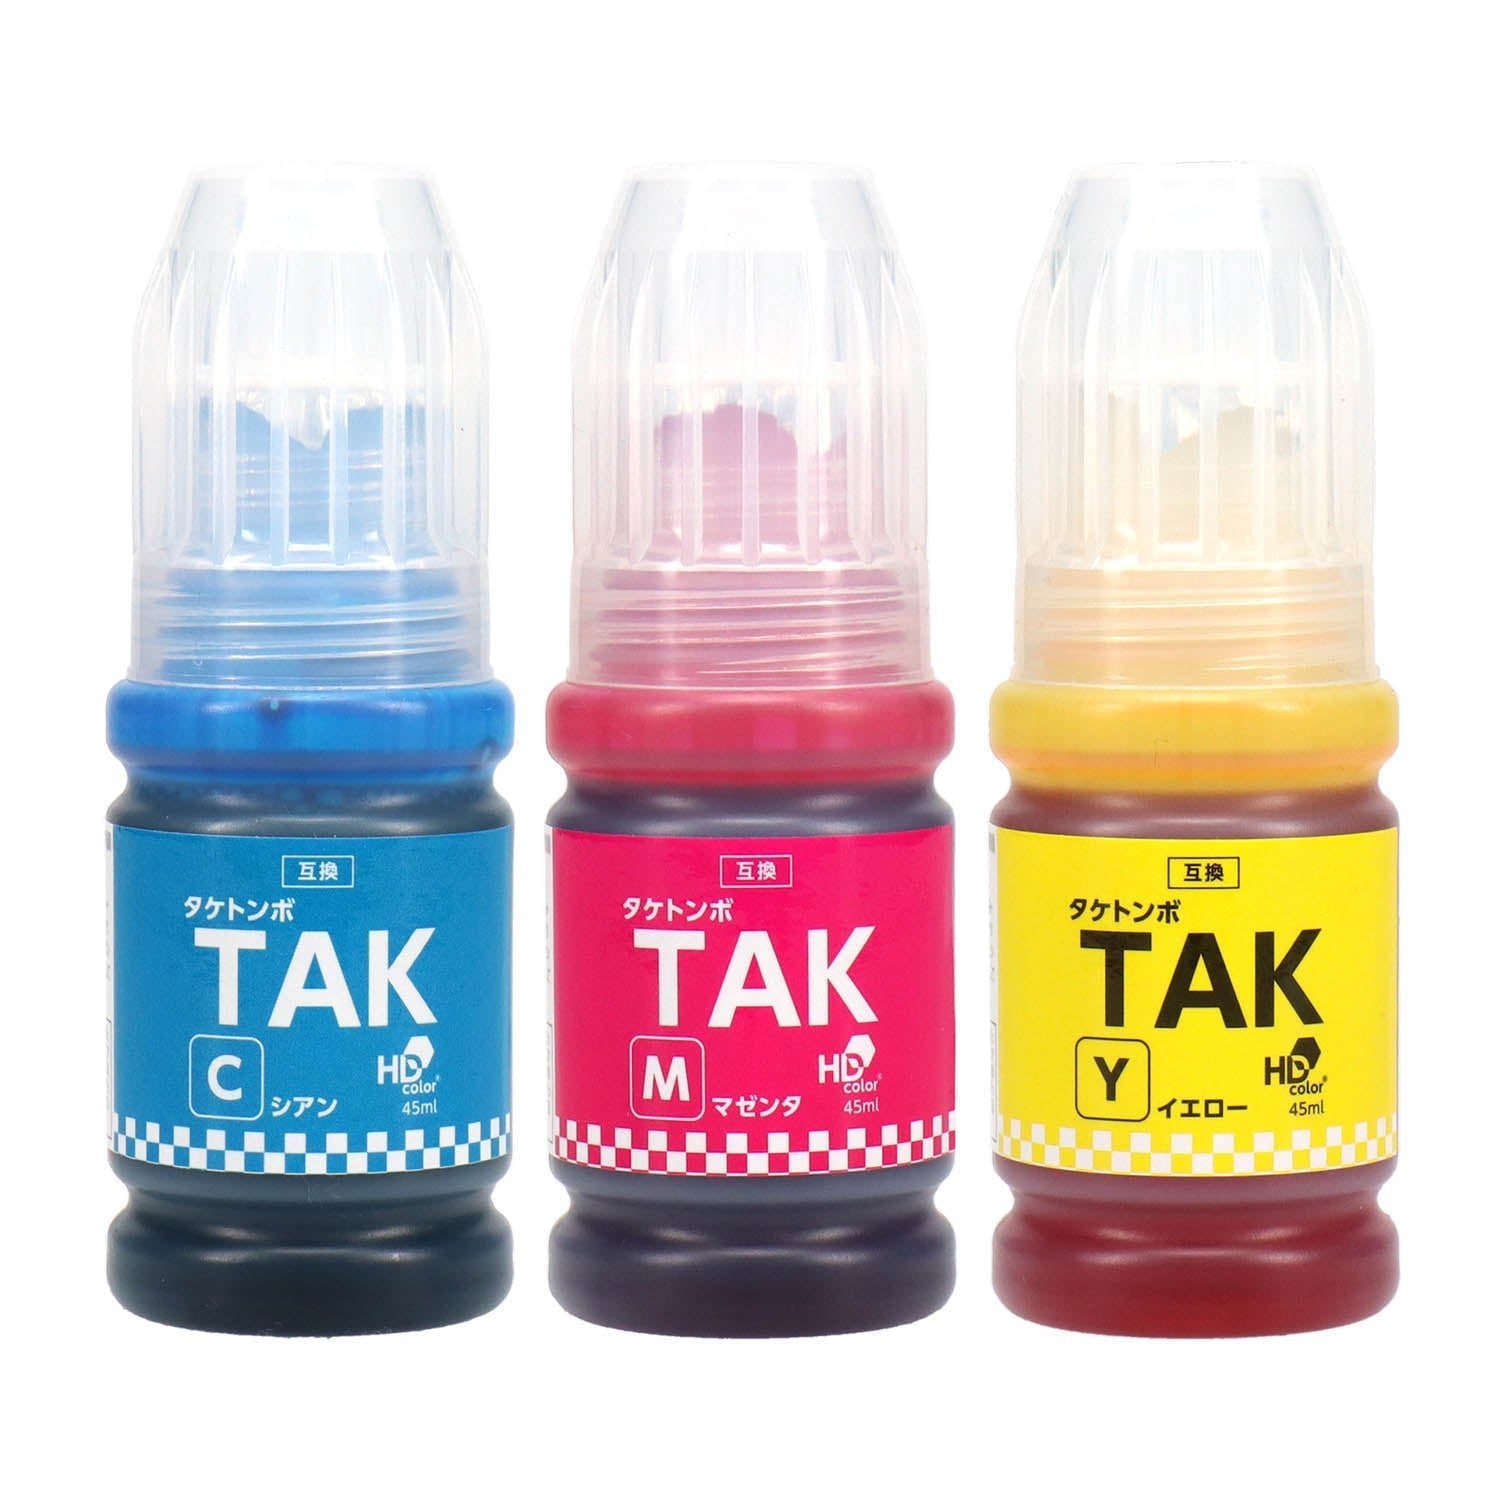 エプソン用 TAK (タケトンボ) 互換インクボトル カラー3色